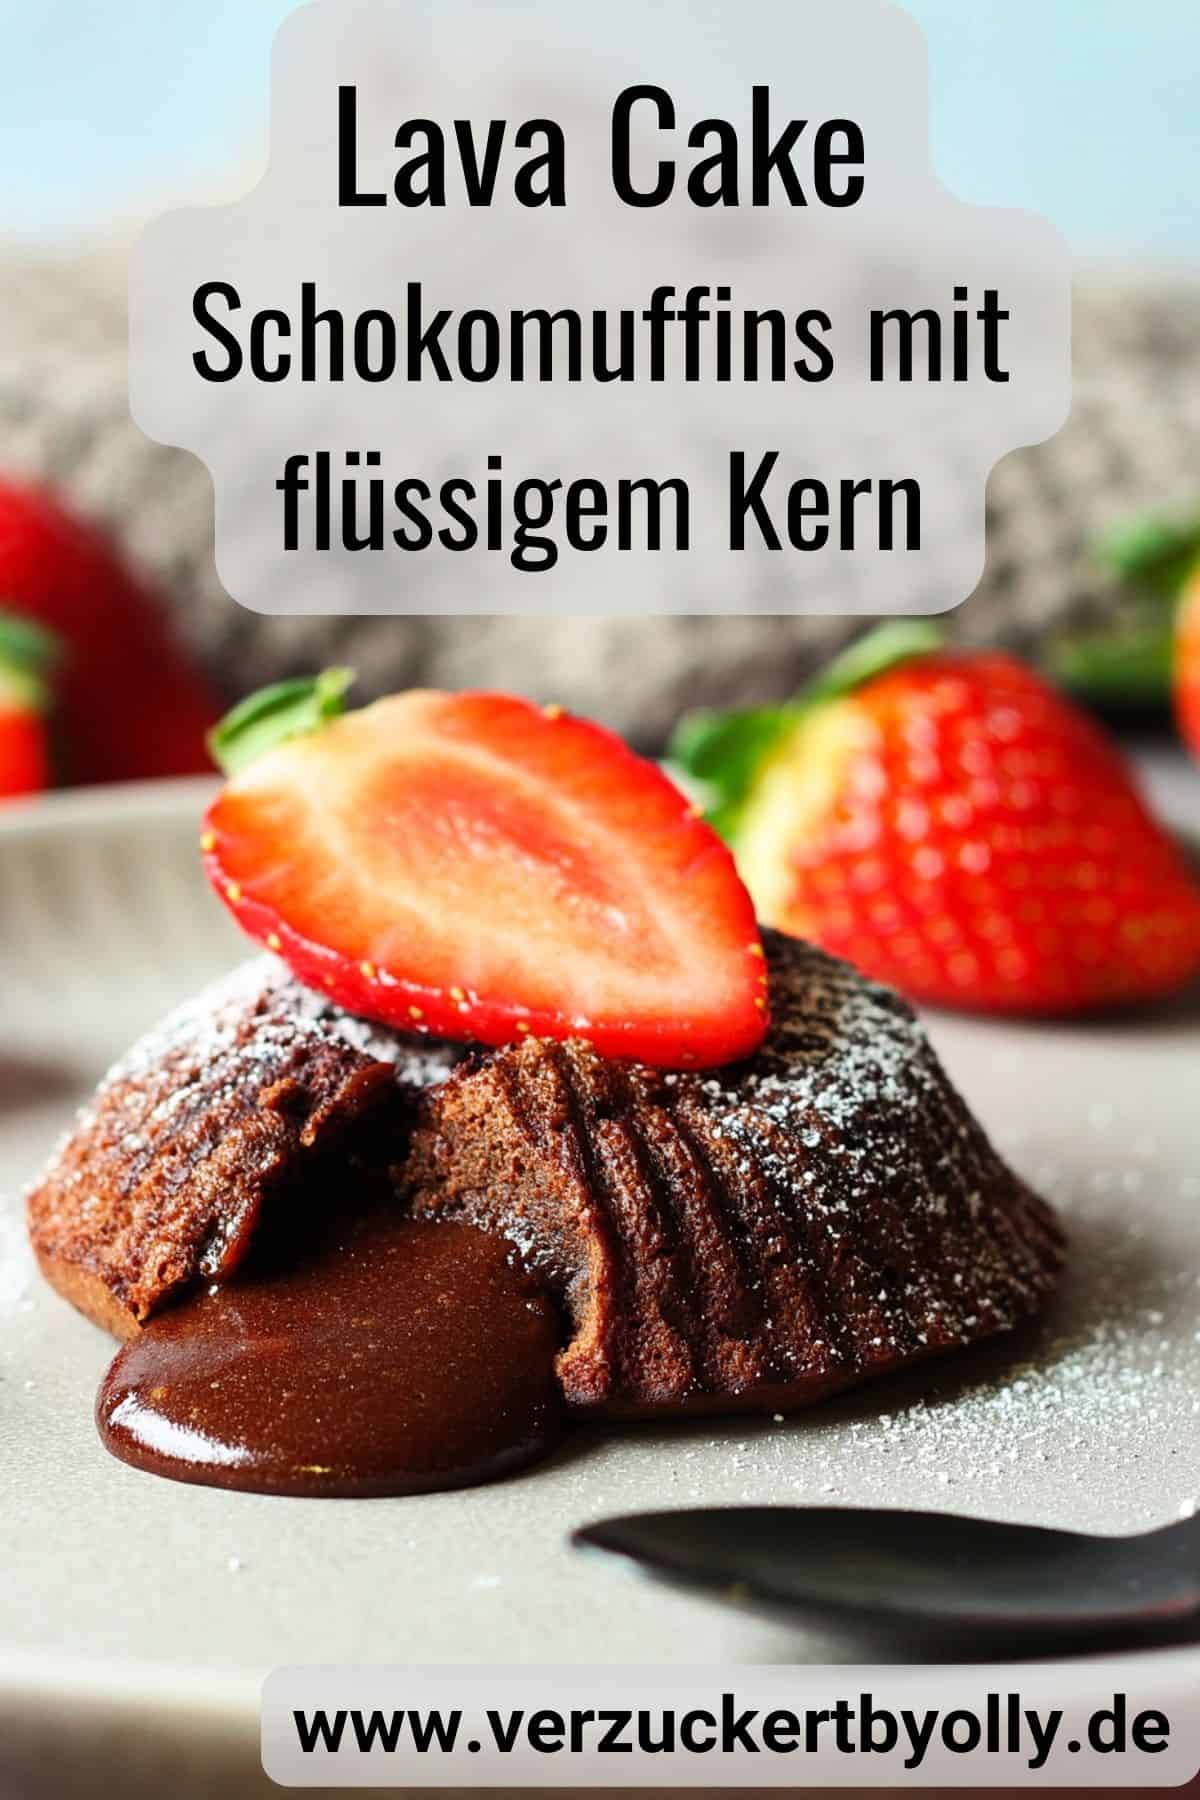 Pin zu Pinterest: Schokomuffins mit flüssigem Kern (Lava Cake)